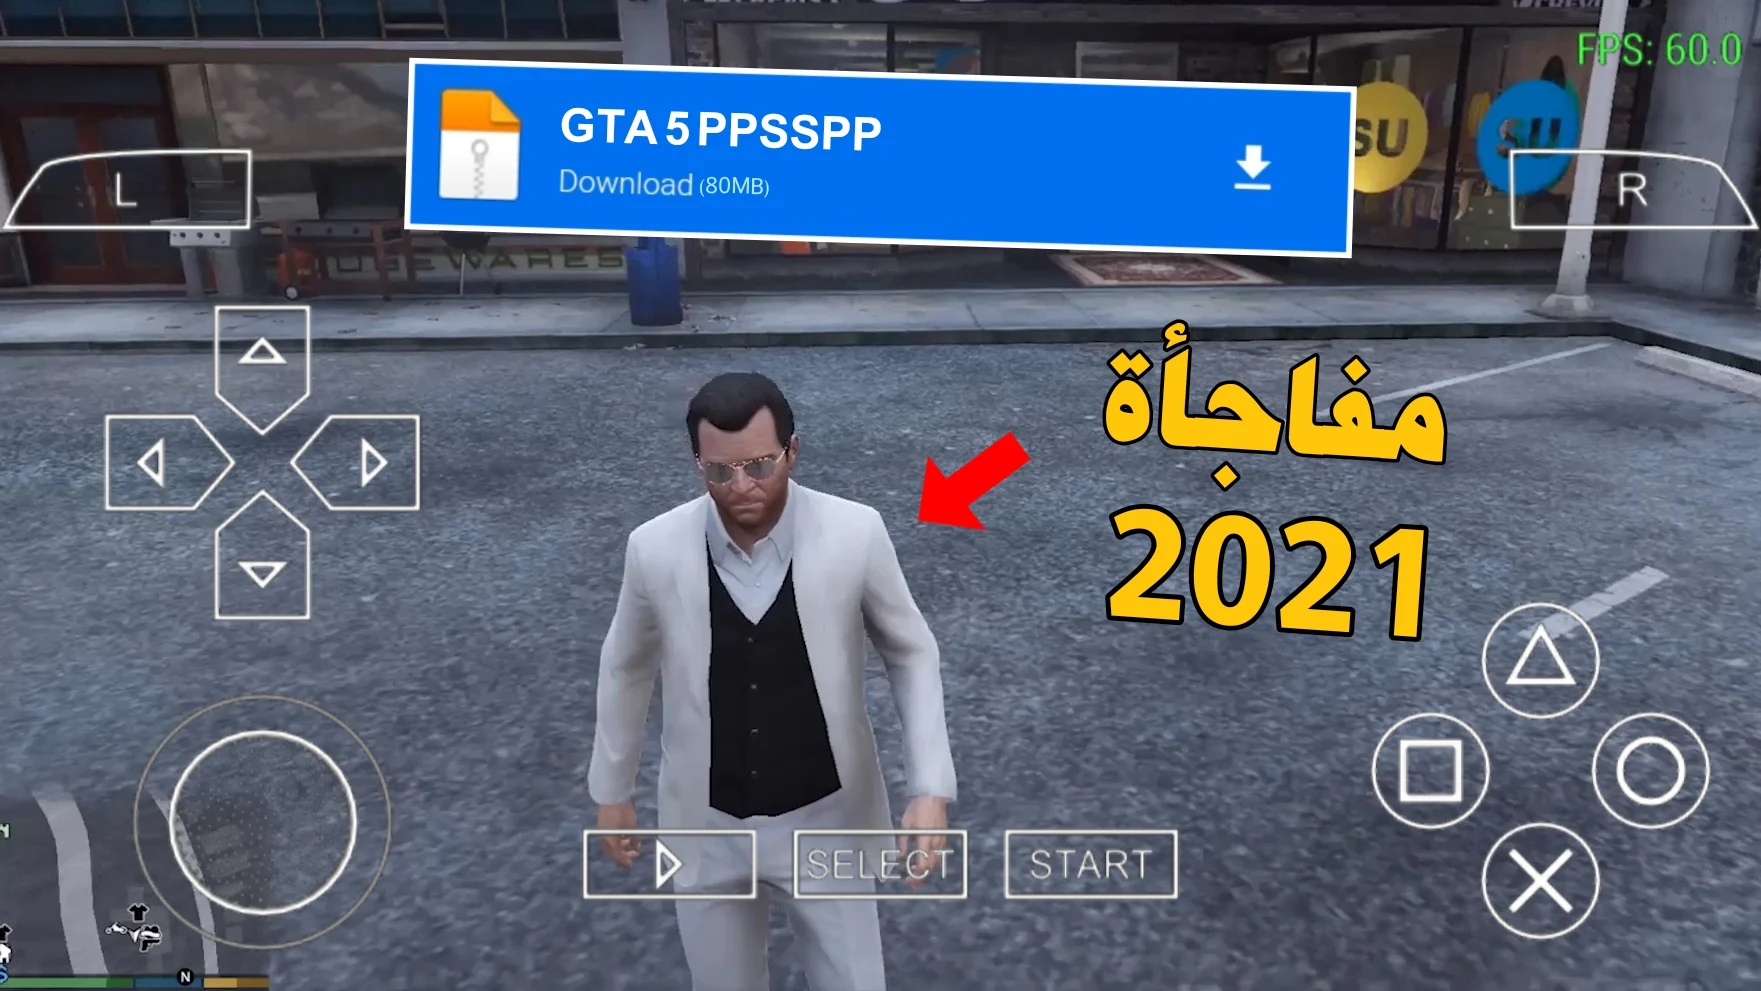 تحميل لعبة GTA V للاندرويد لمحاكي PPSSPP بحجم 80MB من ميديا فاير 2021 سارع لتجربتها!؟